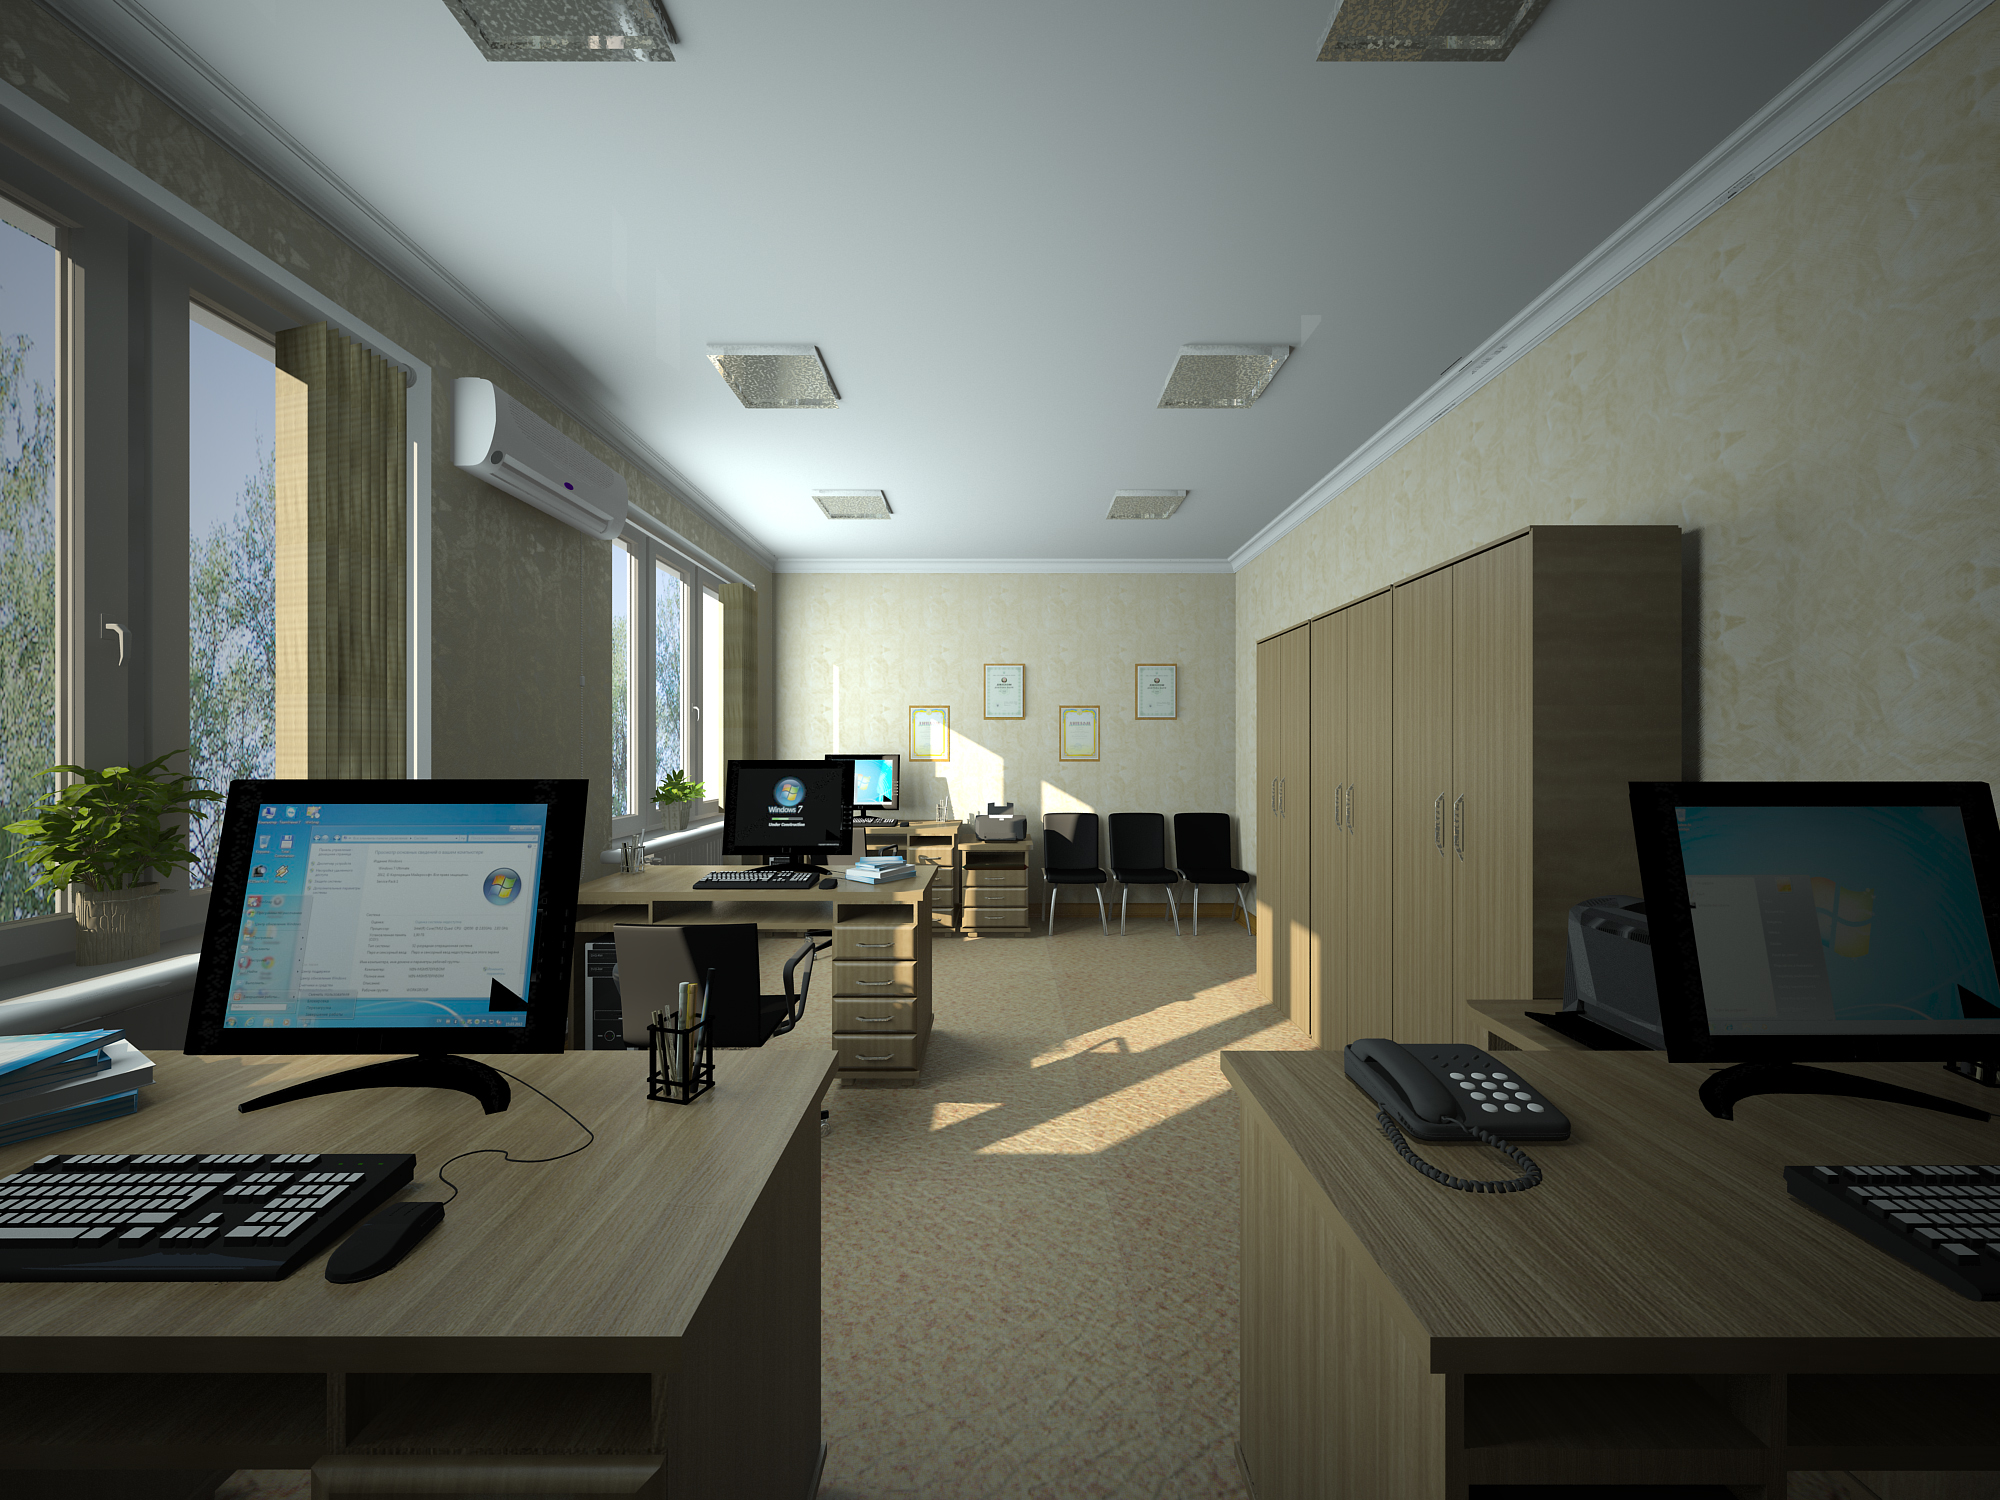 स्लावयस्क का कार्यालय 3d max vray 3.0 में प्रस्तुत छवि